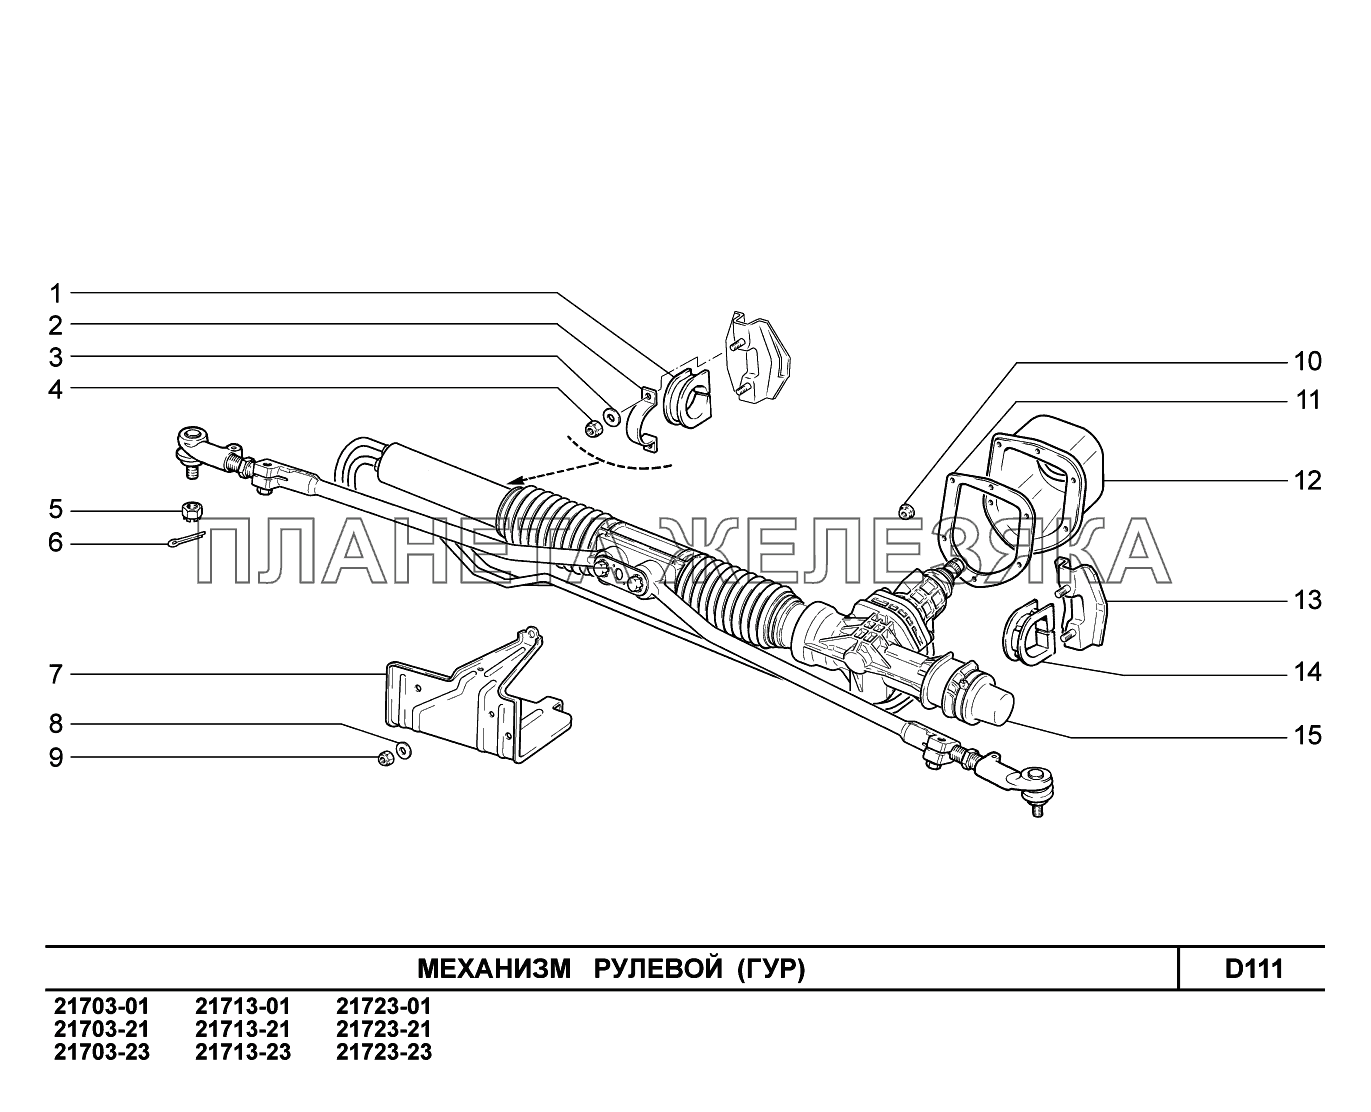 D111. Механизм рулевой ВАЗ-2170 